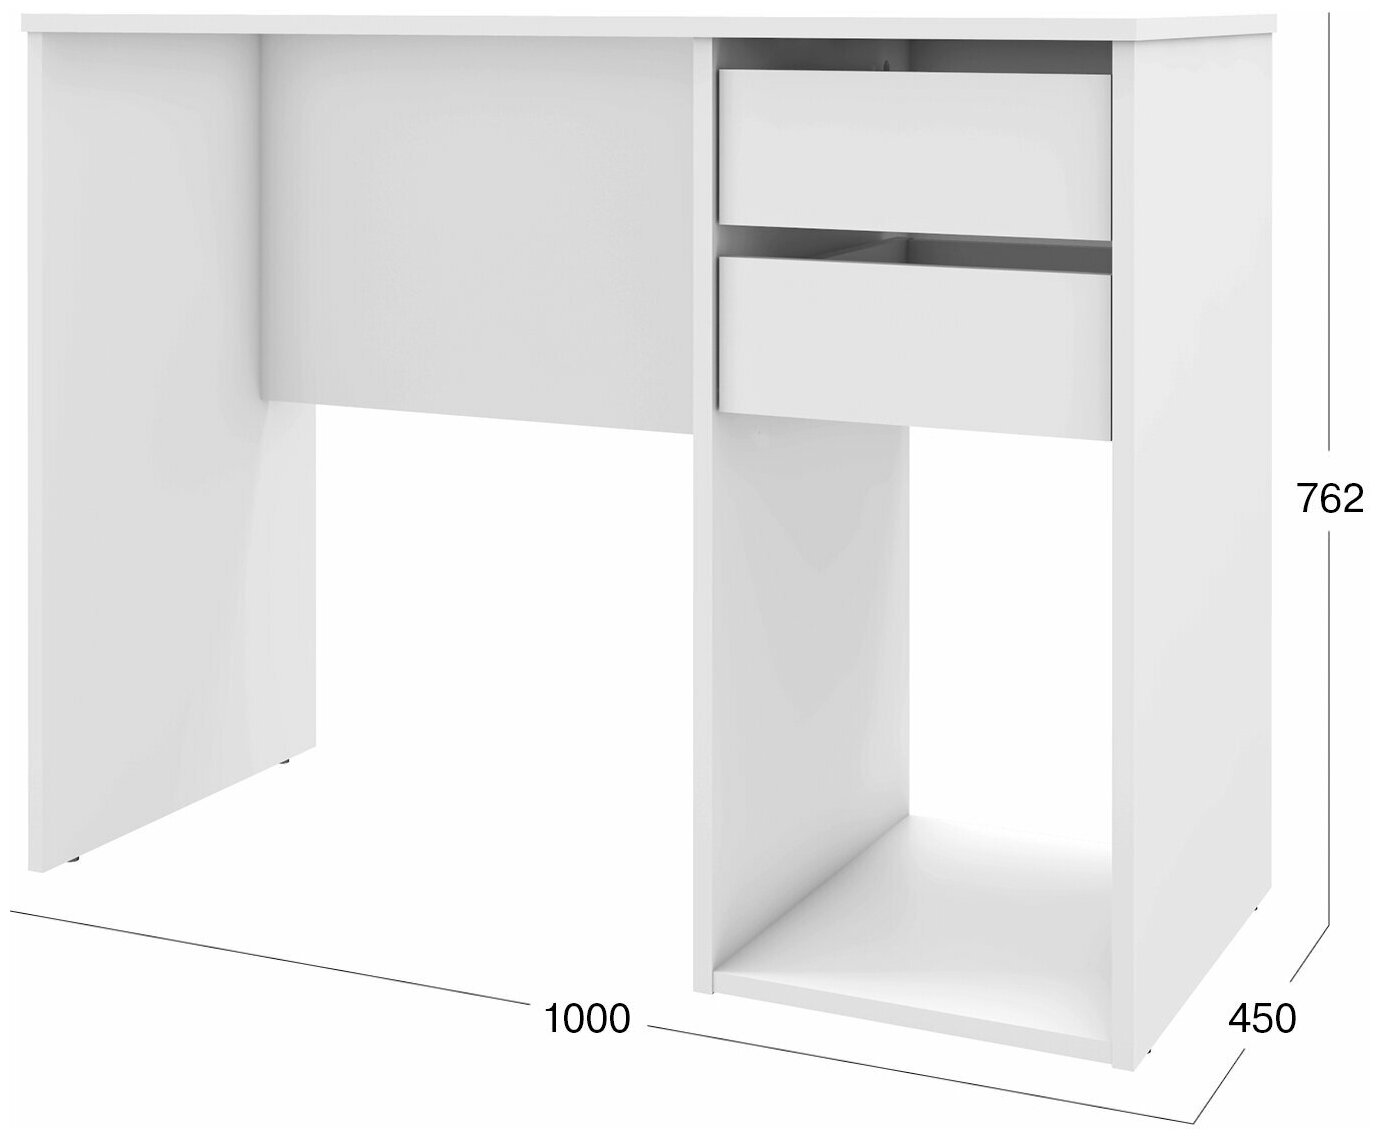 Письменный стол, компьютерный стол Beneli алекс, Белый, с ящиками; с подставкой для системного блока, 100х45х76,2 см, 1 шт.